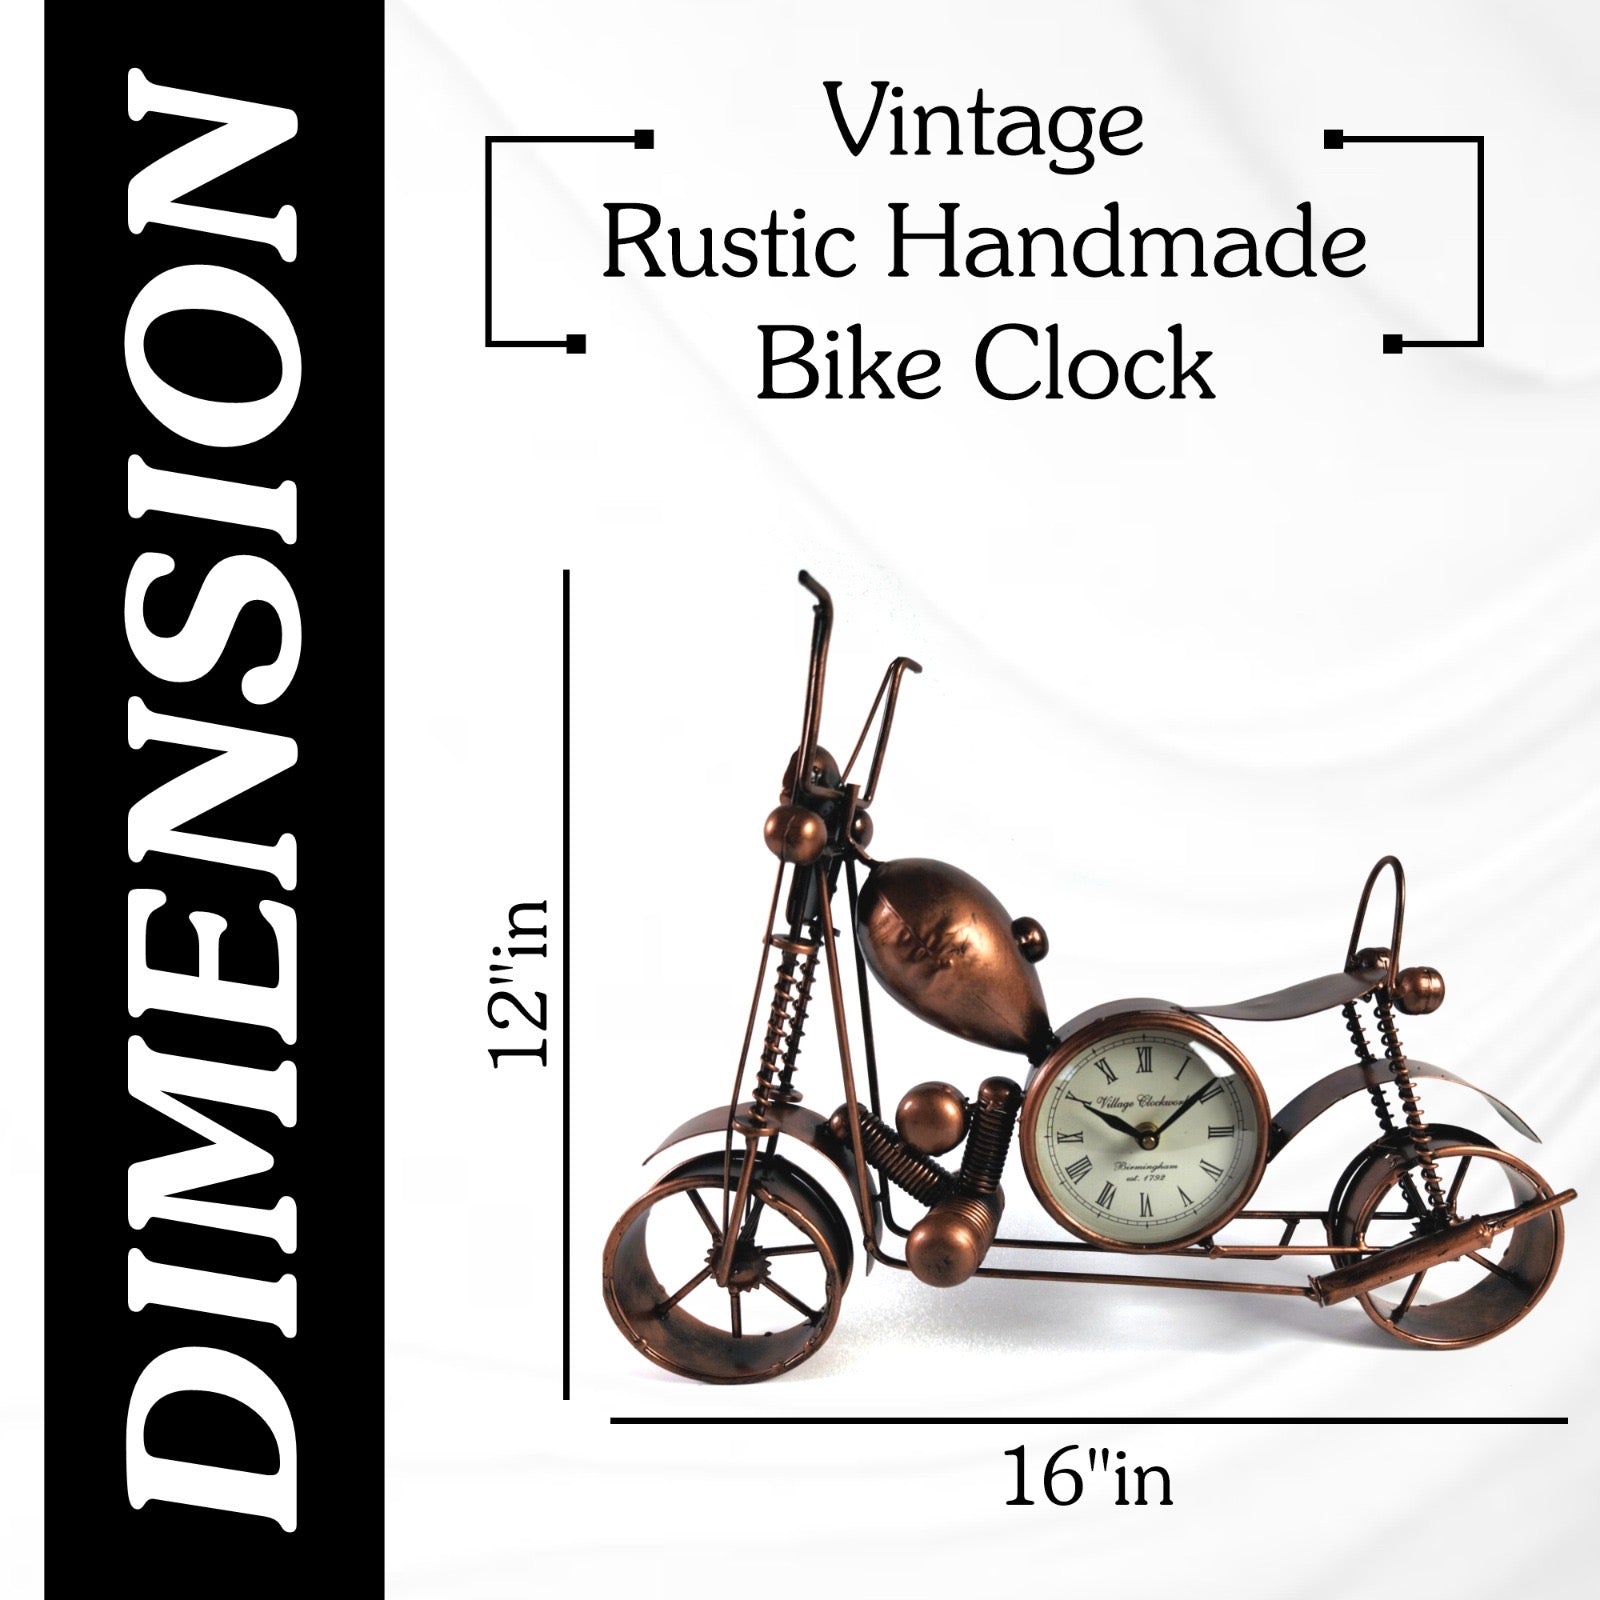 Vintage Rustic Handmade Bike Clock